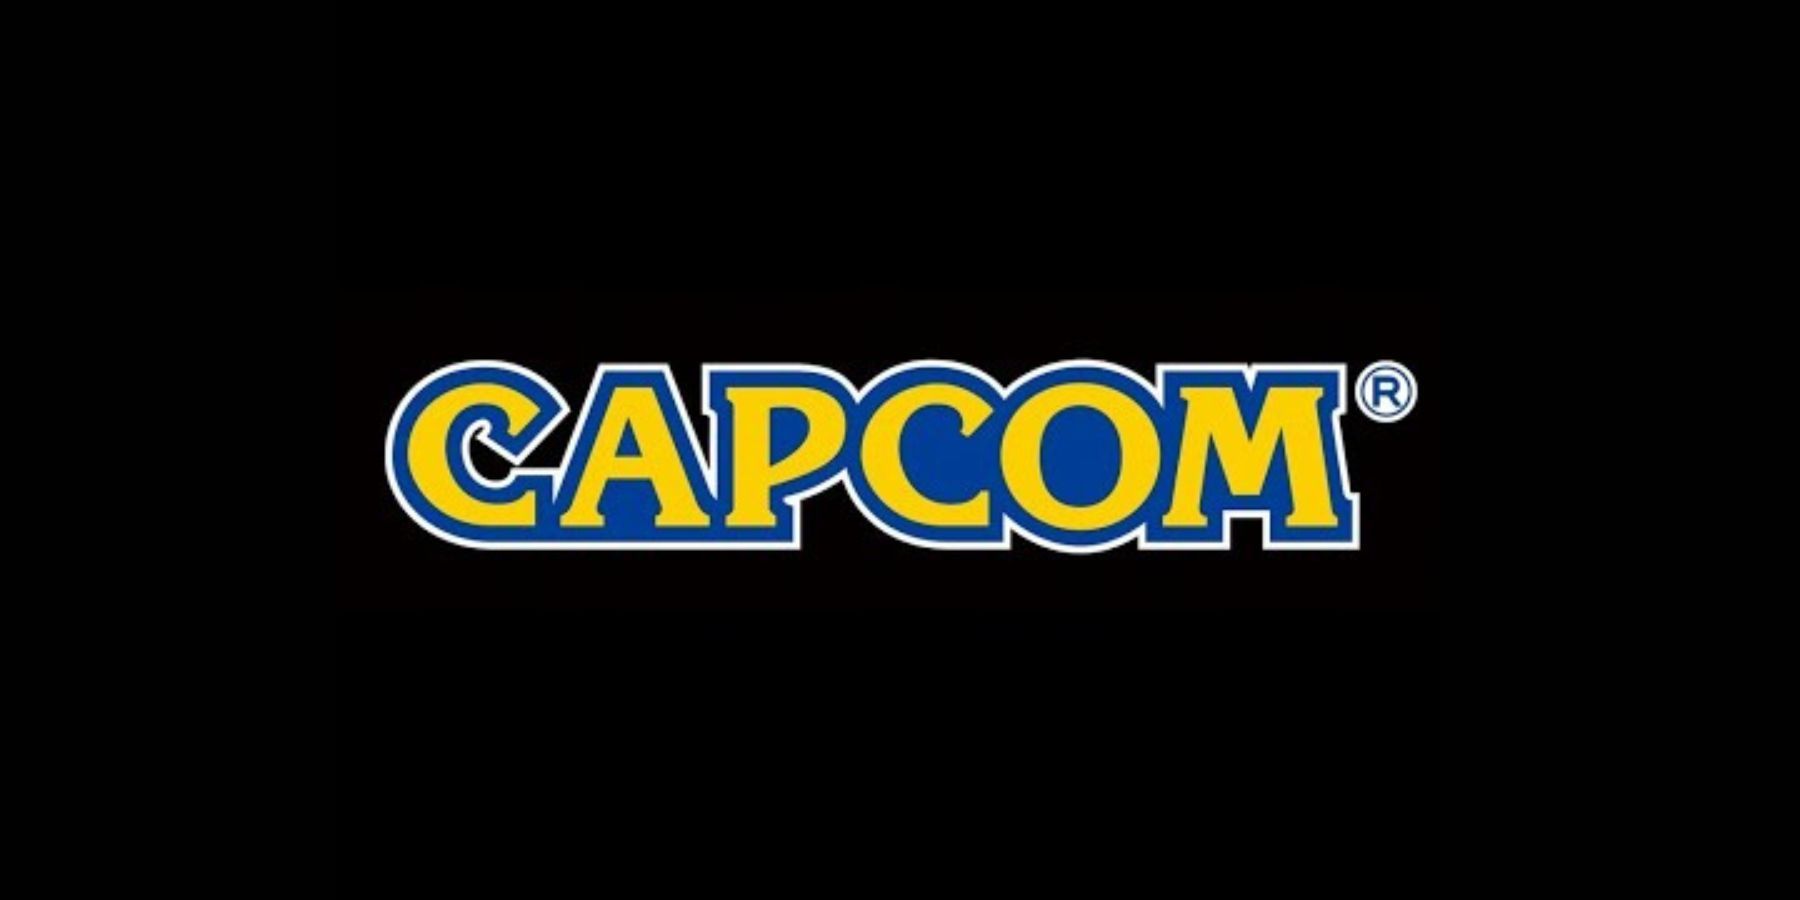 Capcom Comments On New Mega Man Games